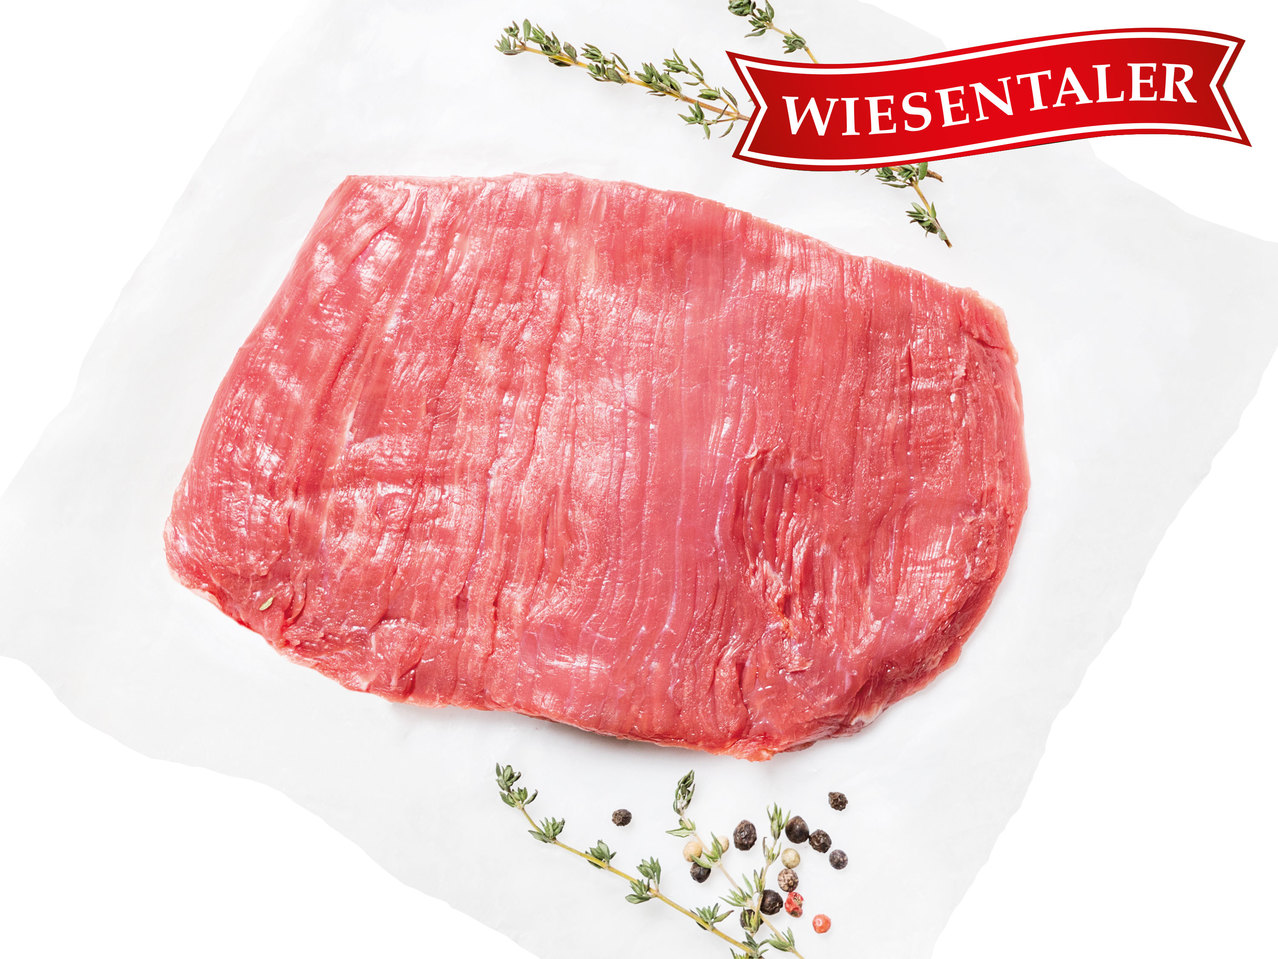 WIESENTALER Frisches österreichisches Flank-Steak